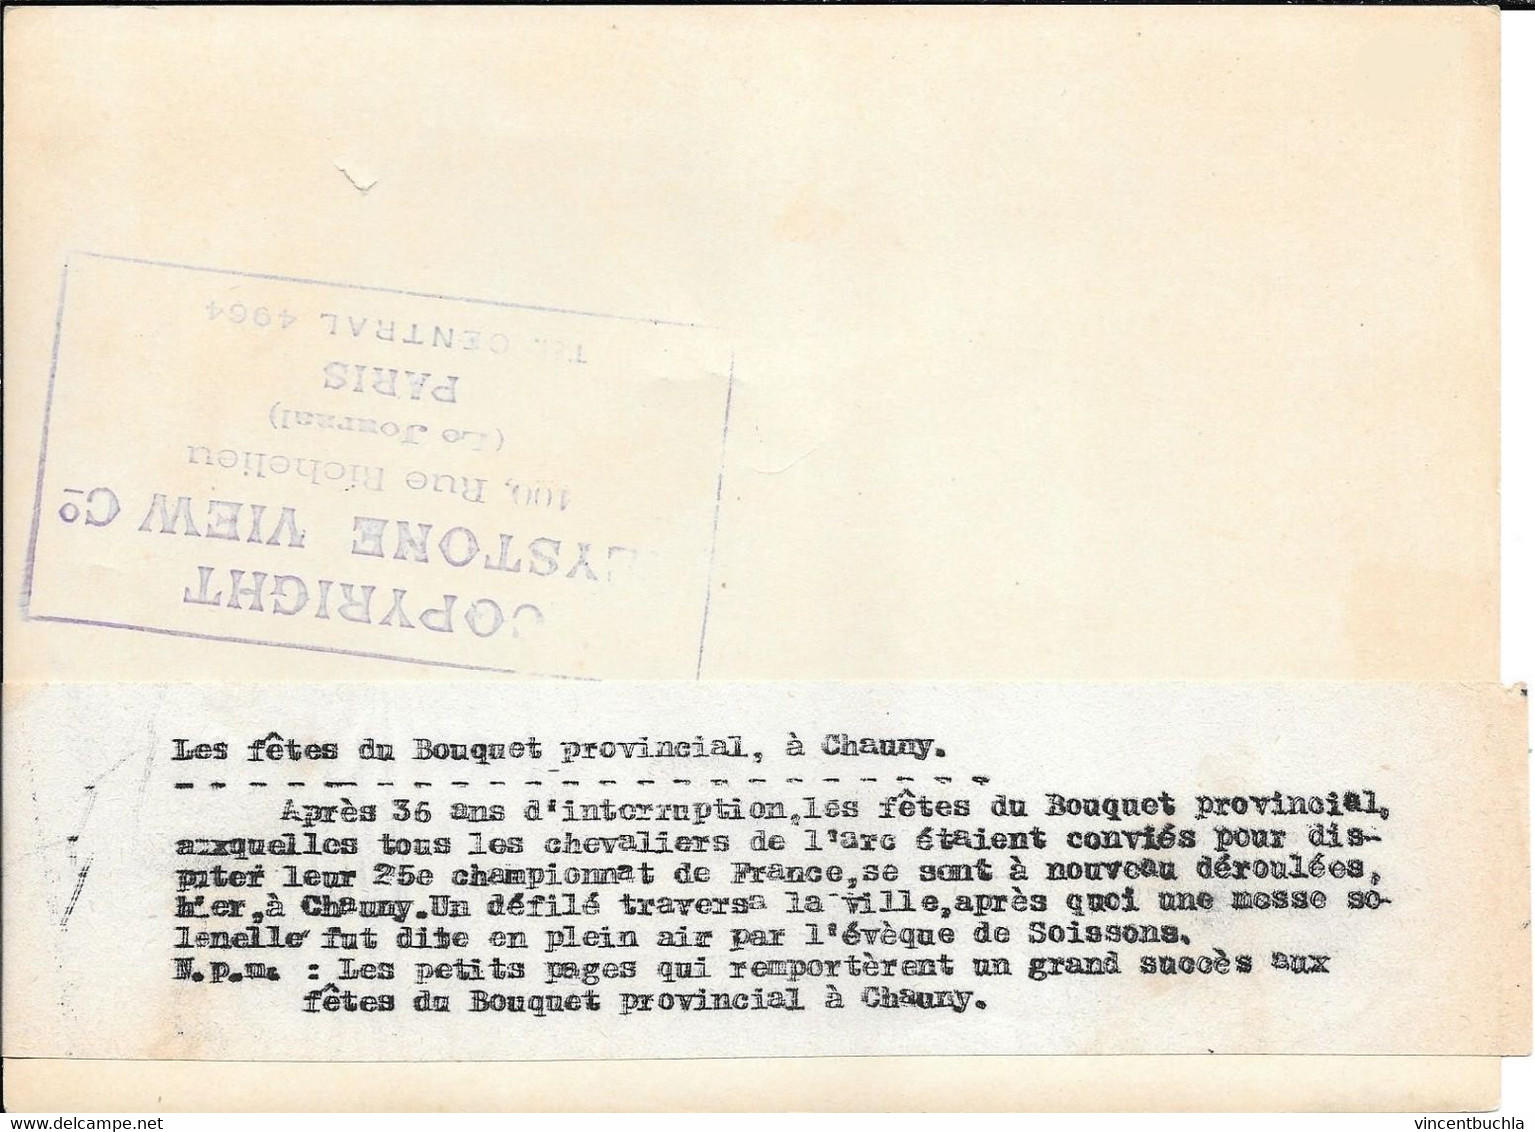 Grande Photo Bouquet Provincial Chauny (Aisne) 17 Mai 1928 25è Championat France 12 Petits Pages Keystone Paris - Archery